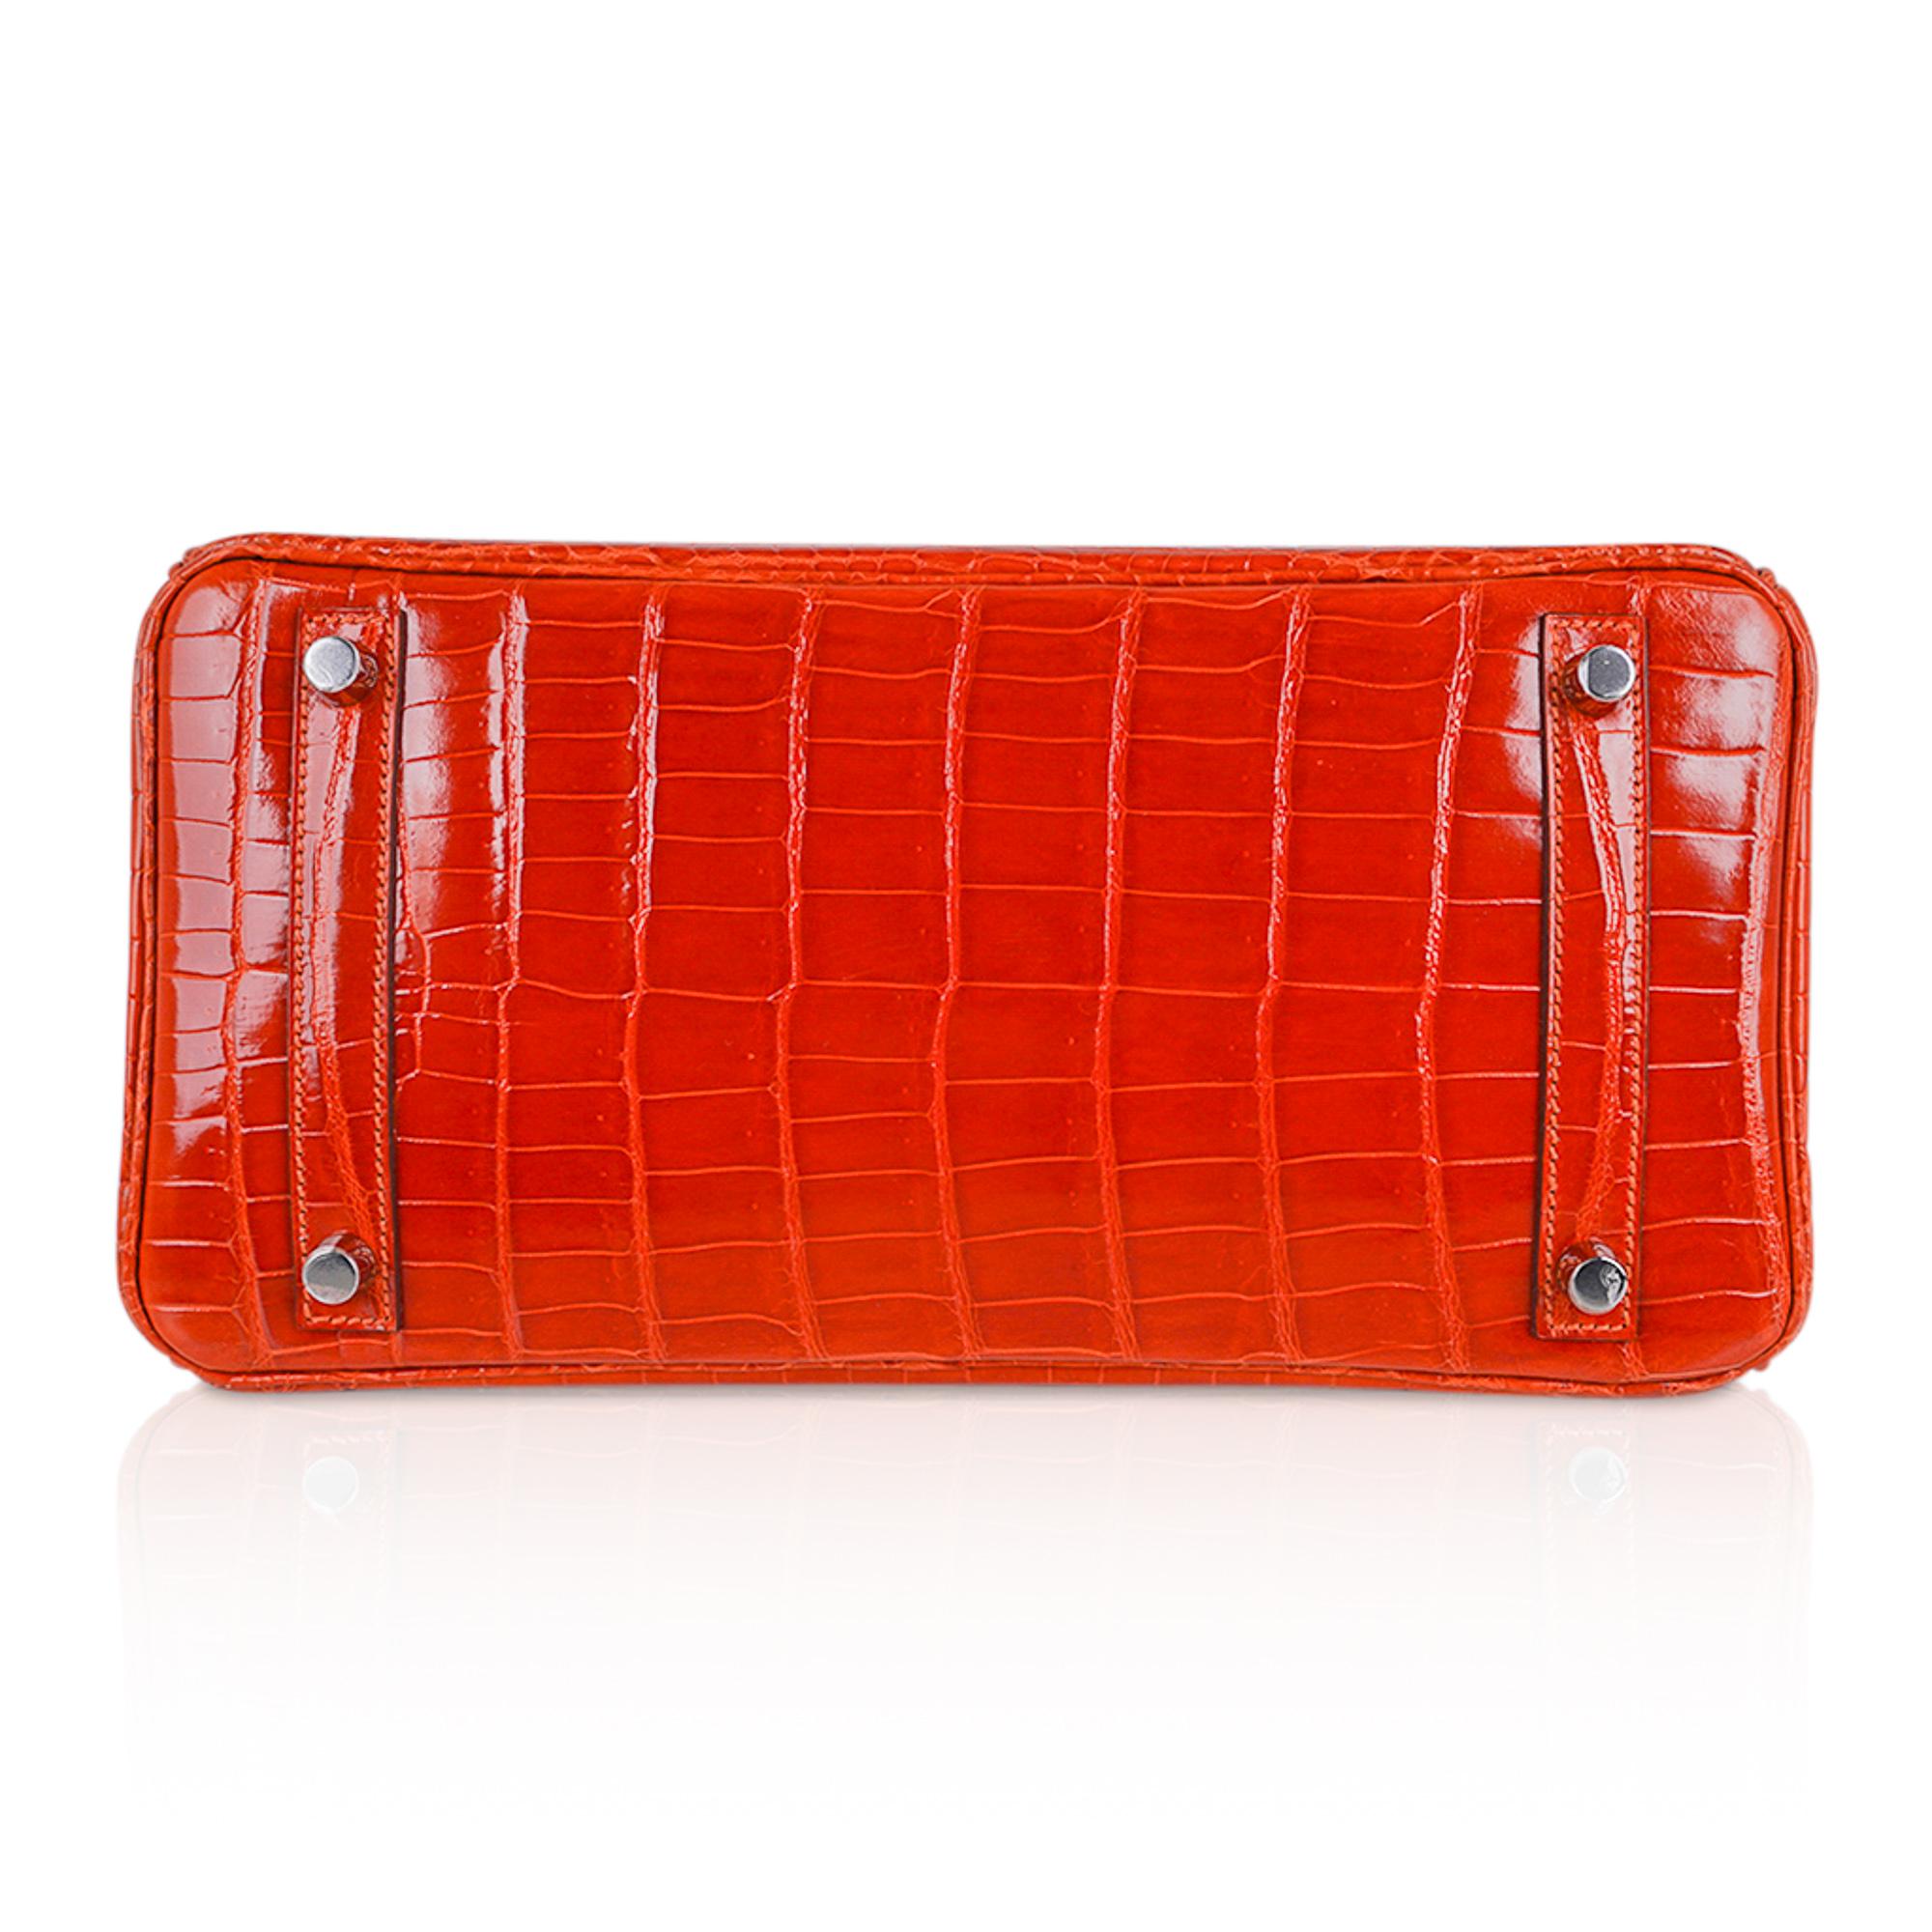 Hermes Birkin 30 Orange Crocodile Bag Palladium Hardware  For Sale 3